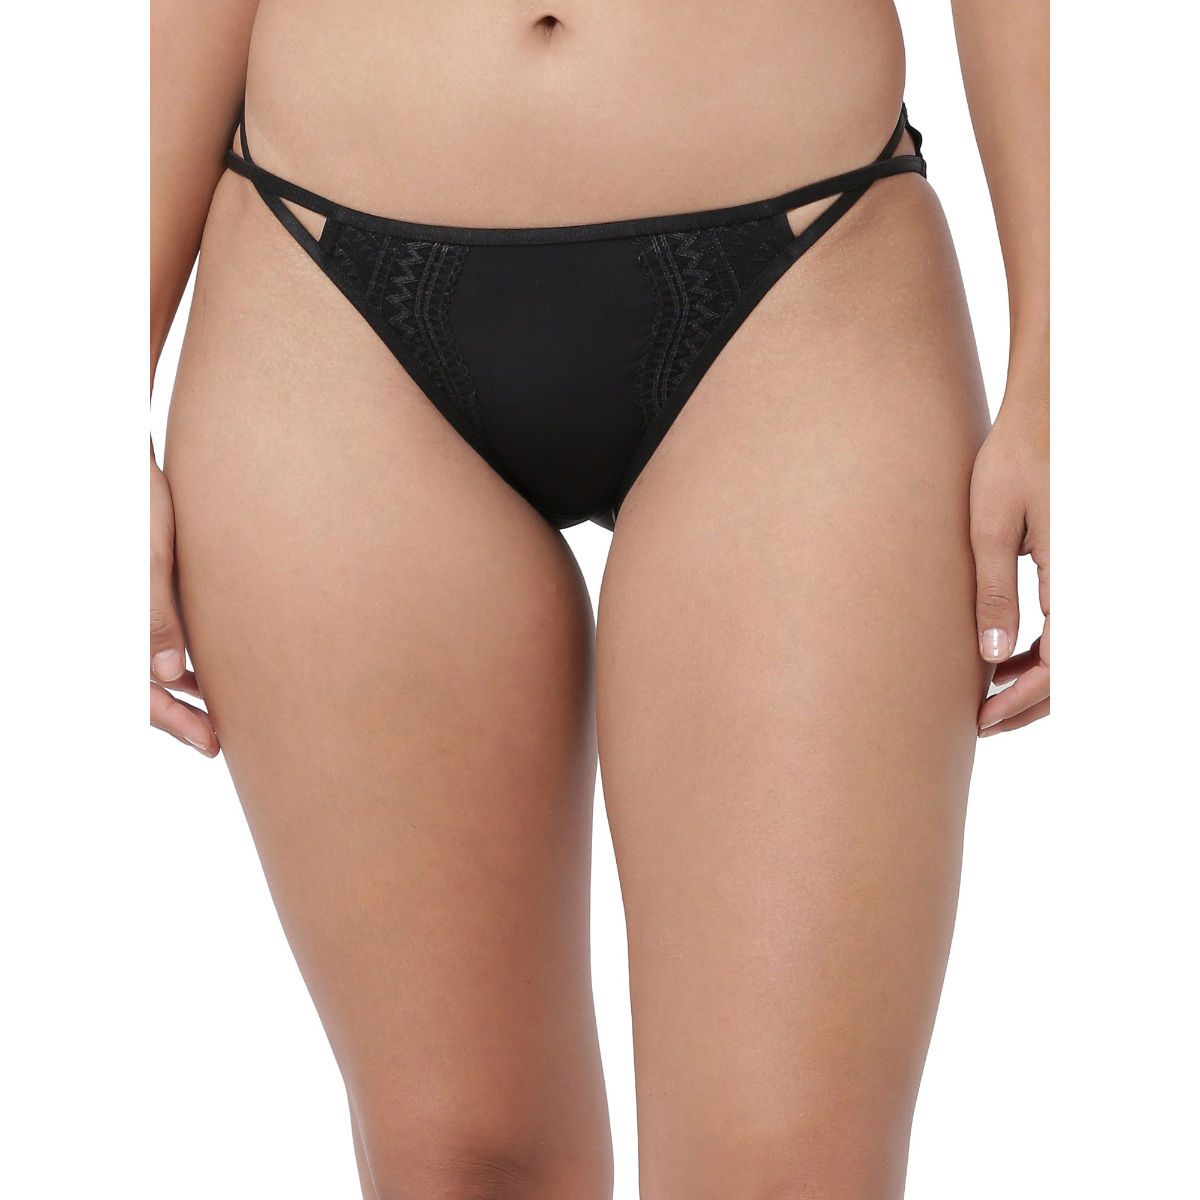 Buy Enamor Women Ultra Low Waist String Bikini Panty Online